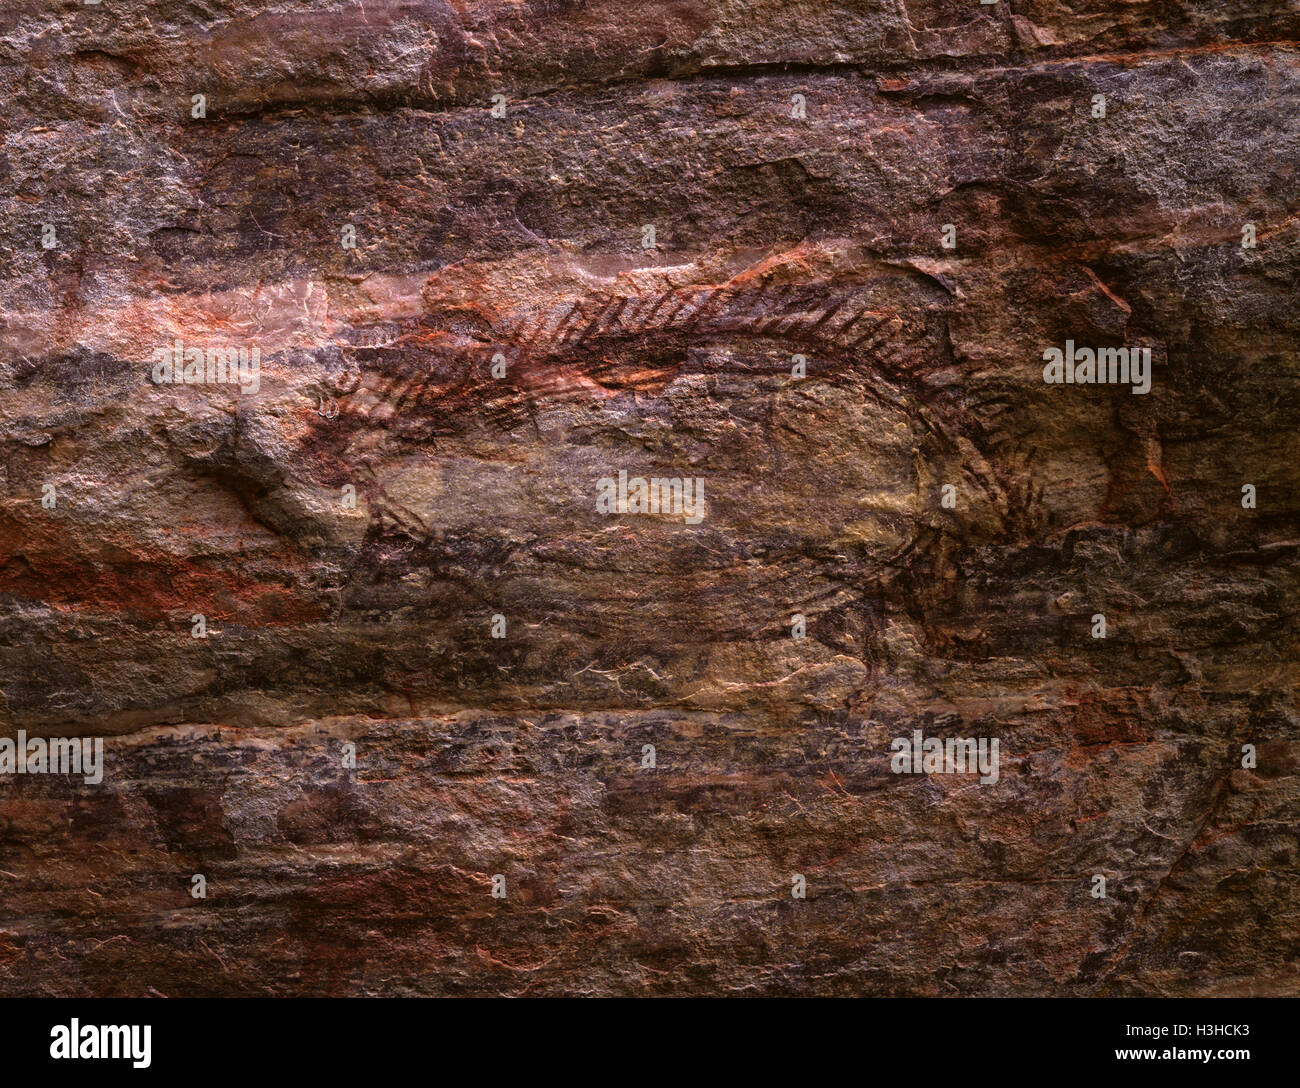 La peinture aborigène dans un style réaliste d'un échidné, 7 000 à 15 000 ans. Banque D'Images